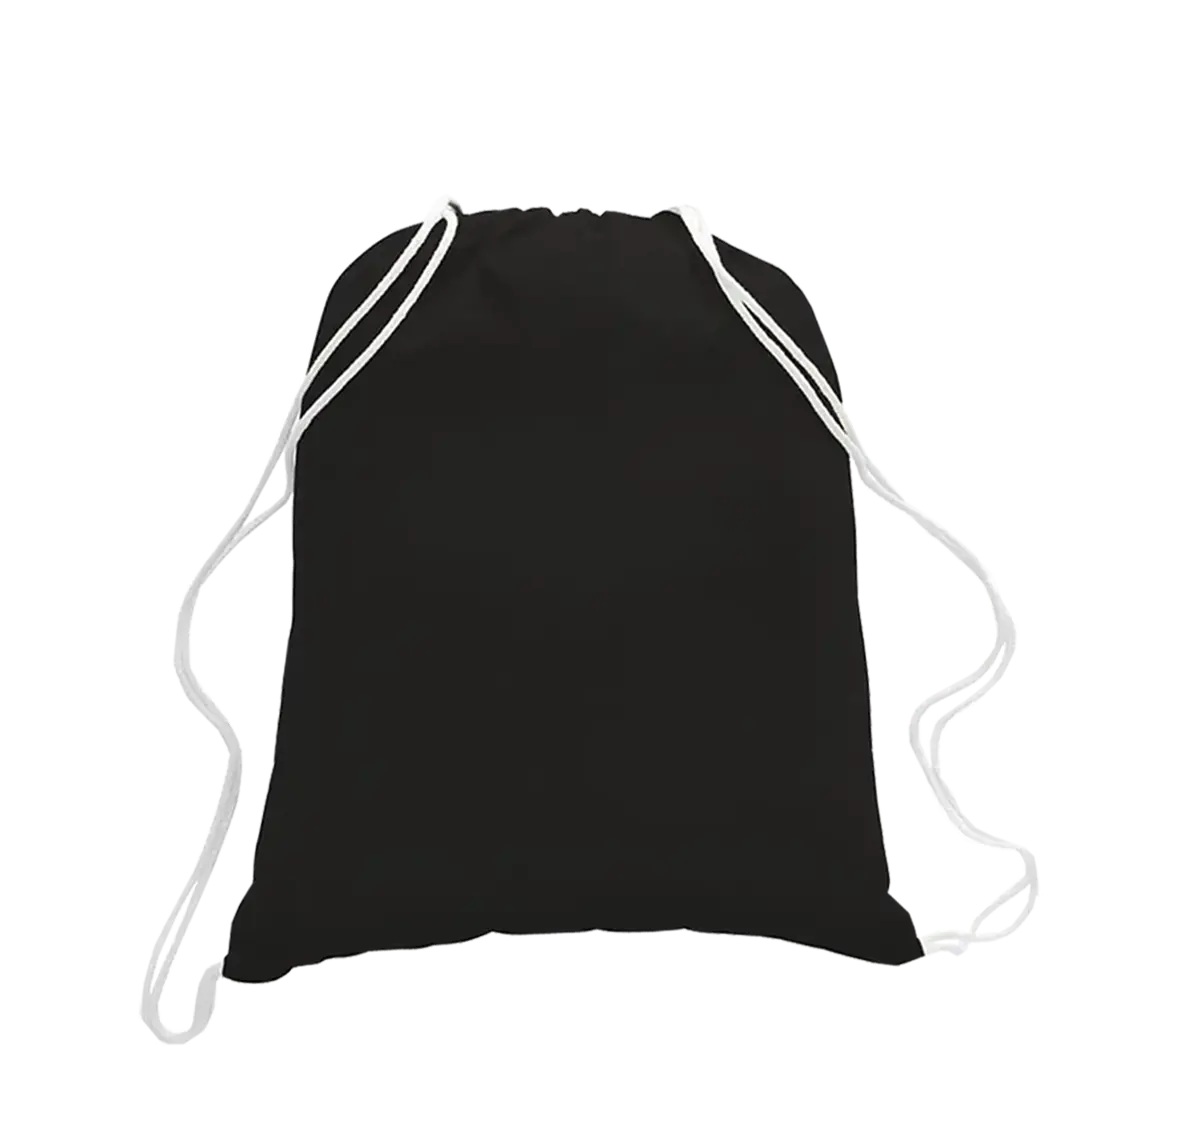 Ransel tali katun tas serut bahan dibuat di India West Bengal warna hitam